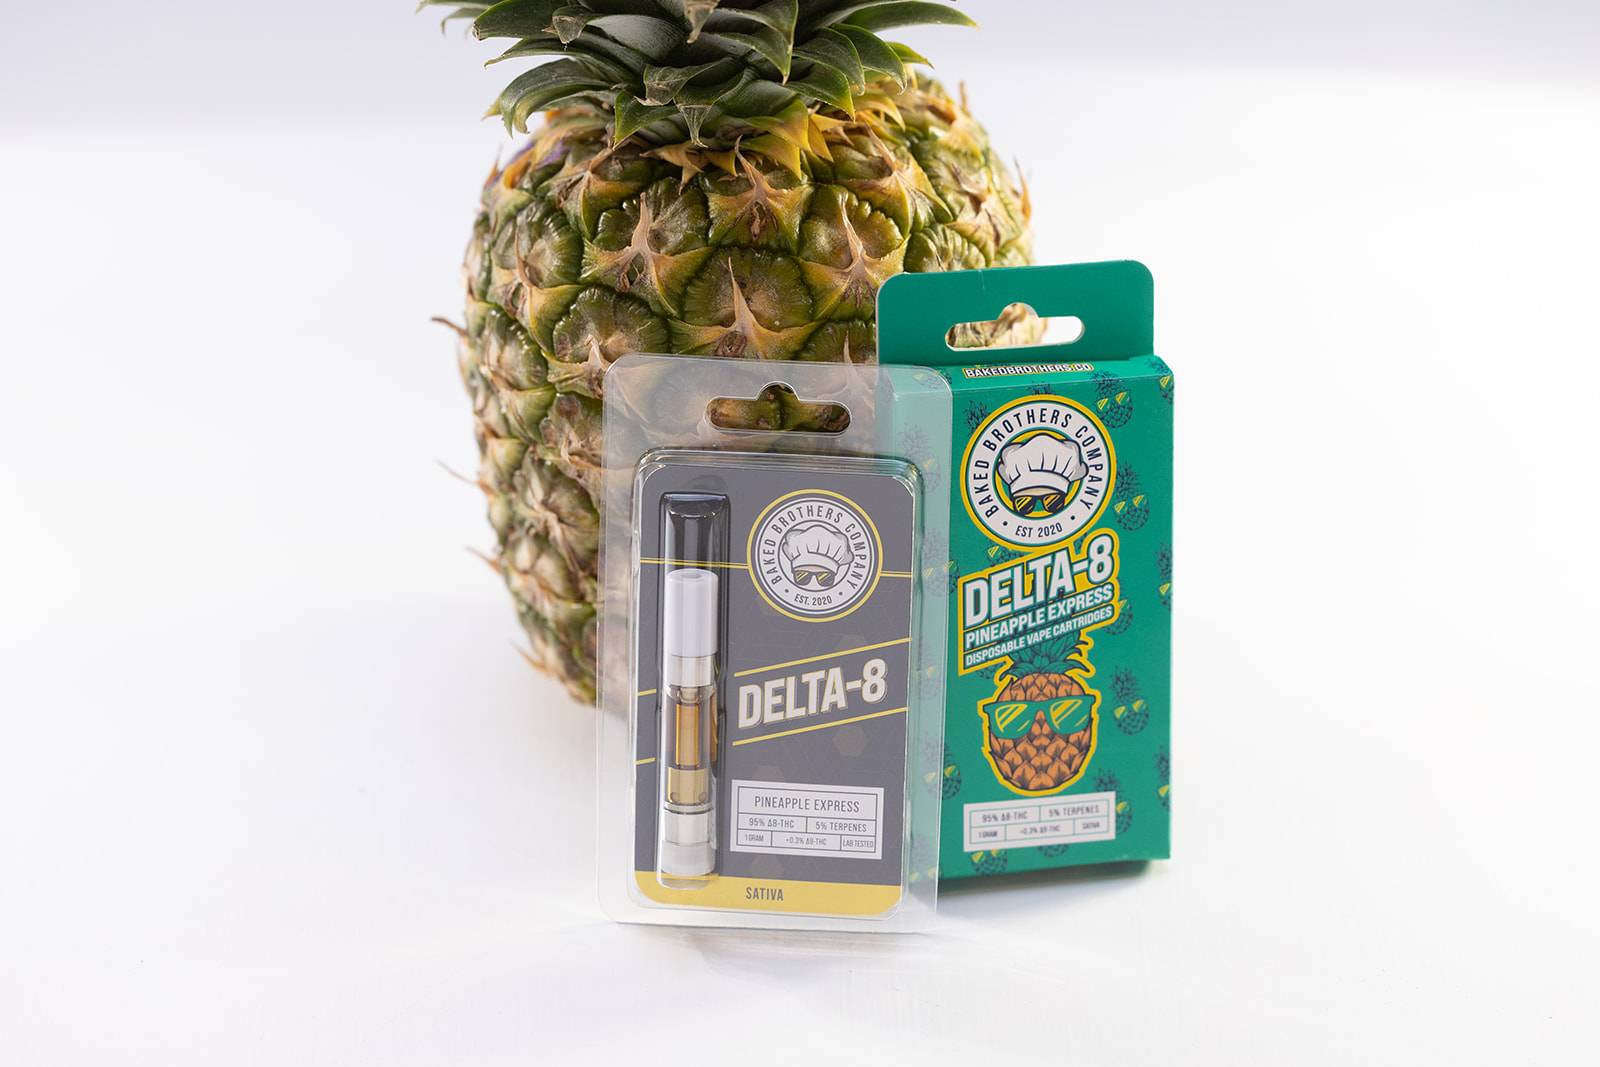 1ml Delta 8 Pineapple Express Cart